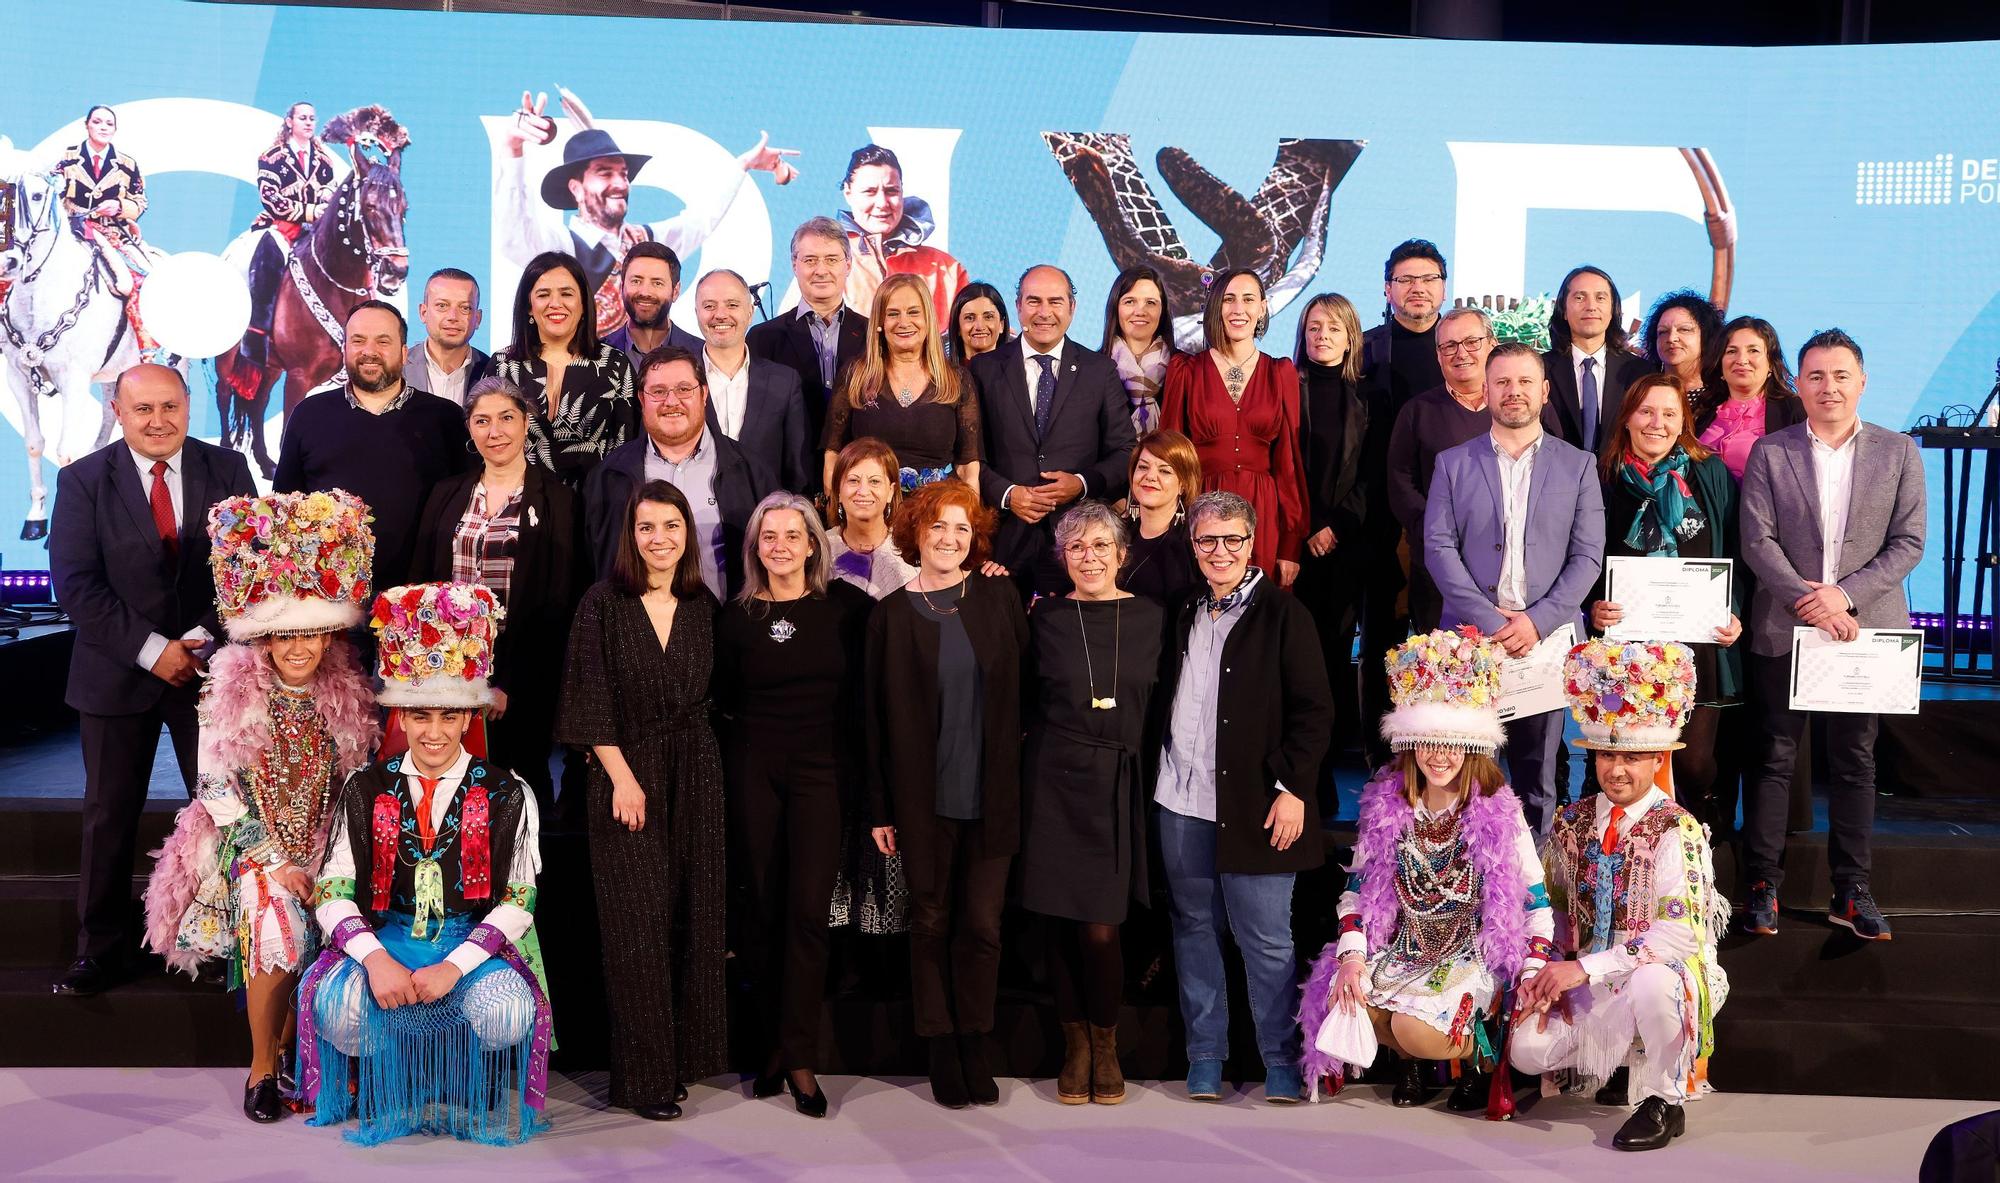 Vigo acoge la Gala Provincial do Turismo para poner en valor la tradición como reclamo